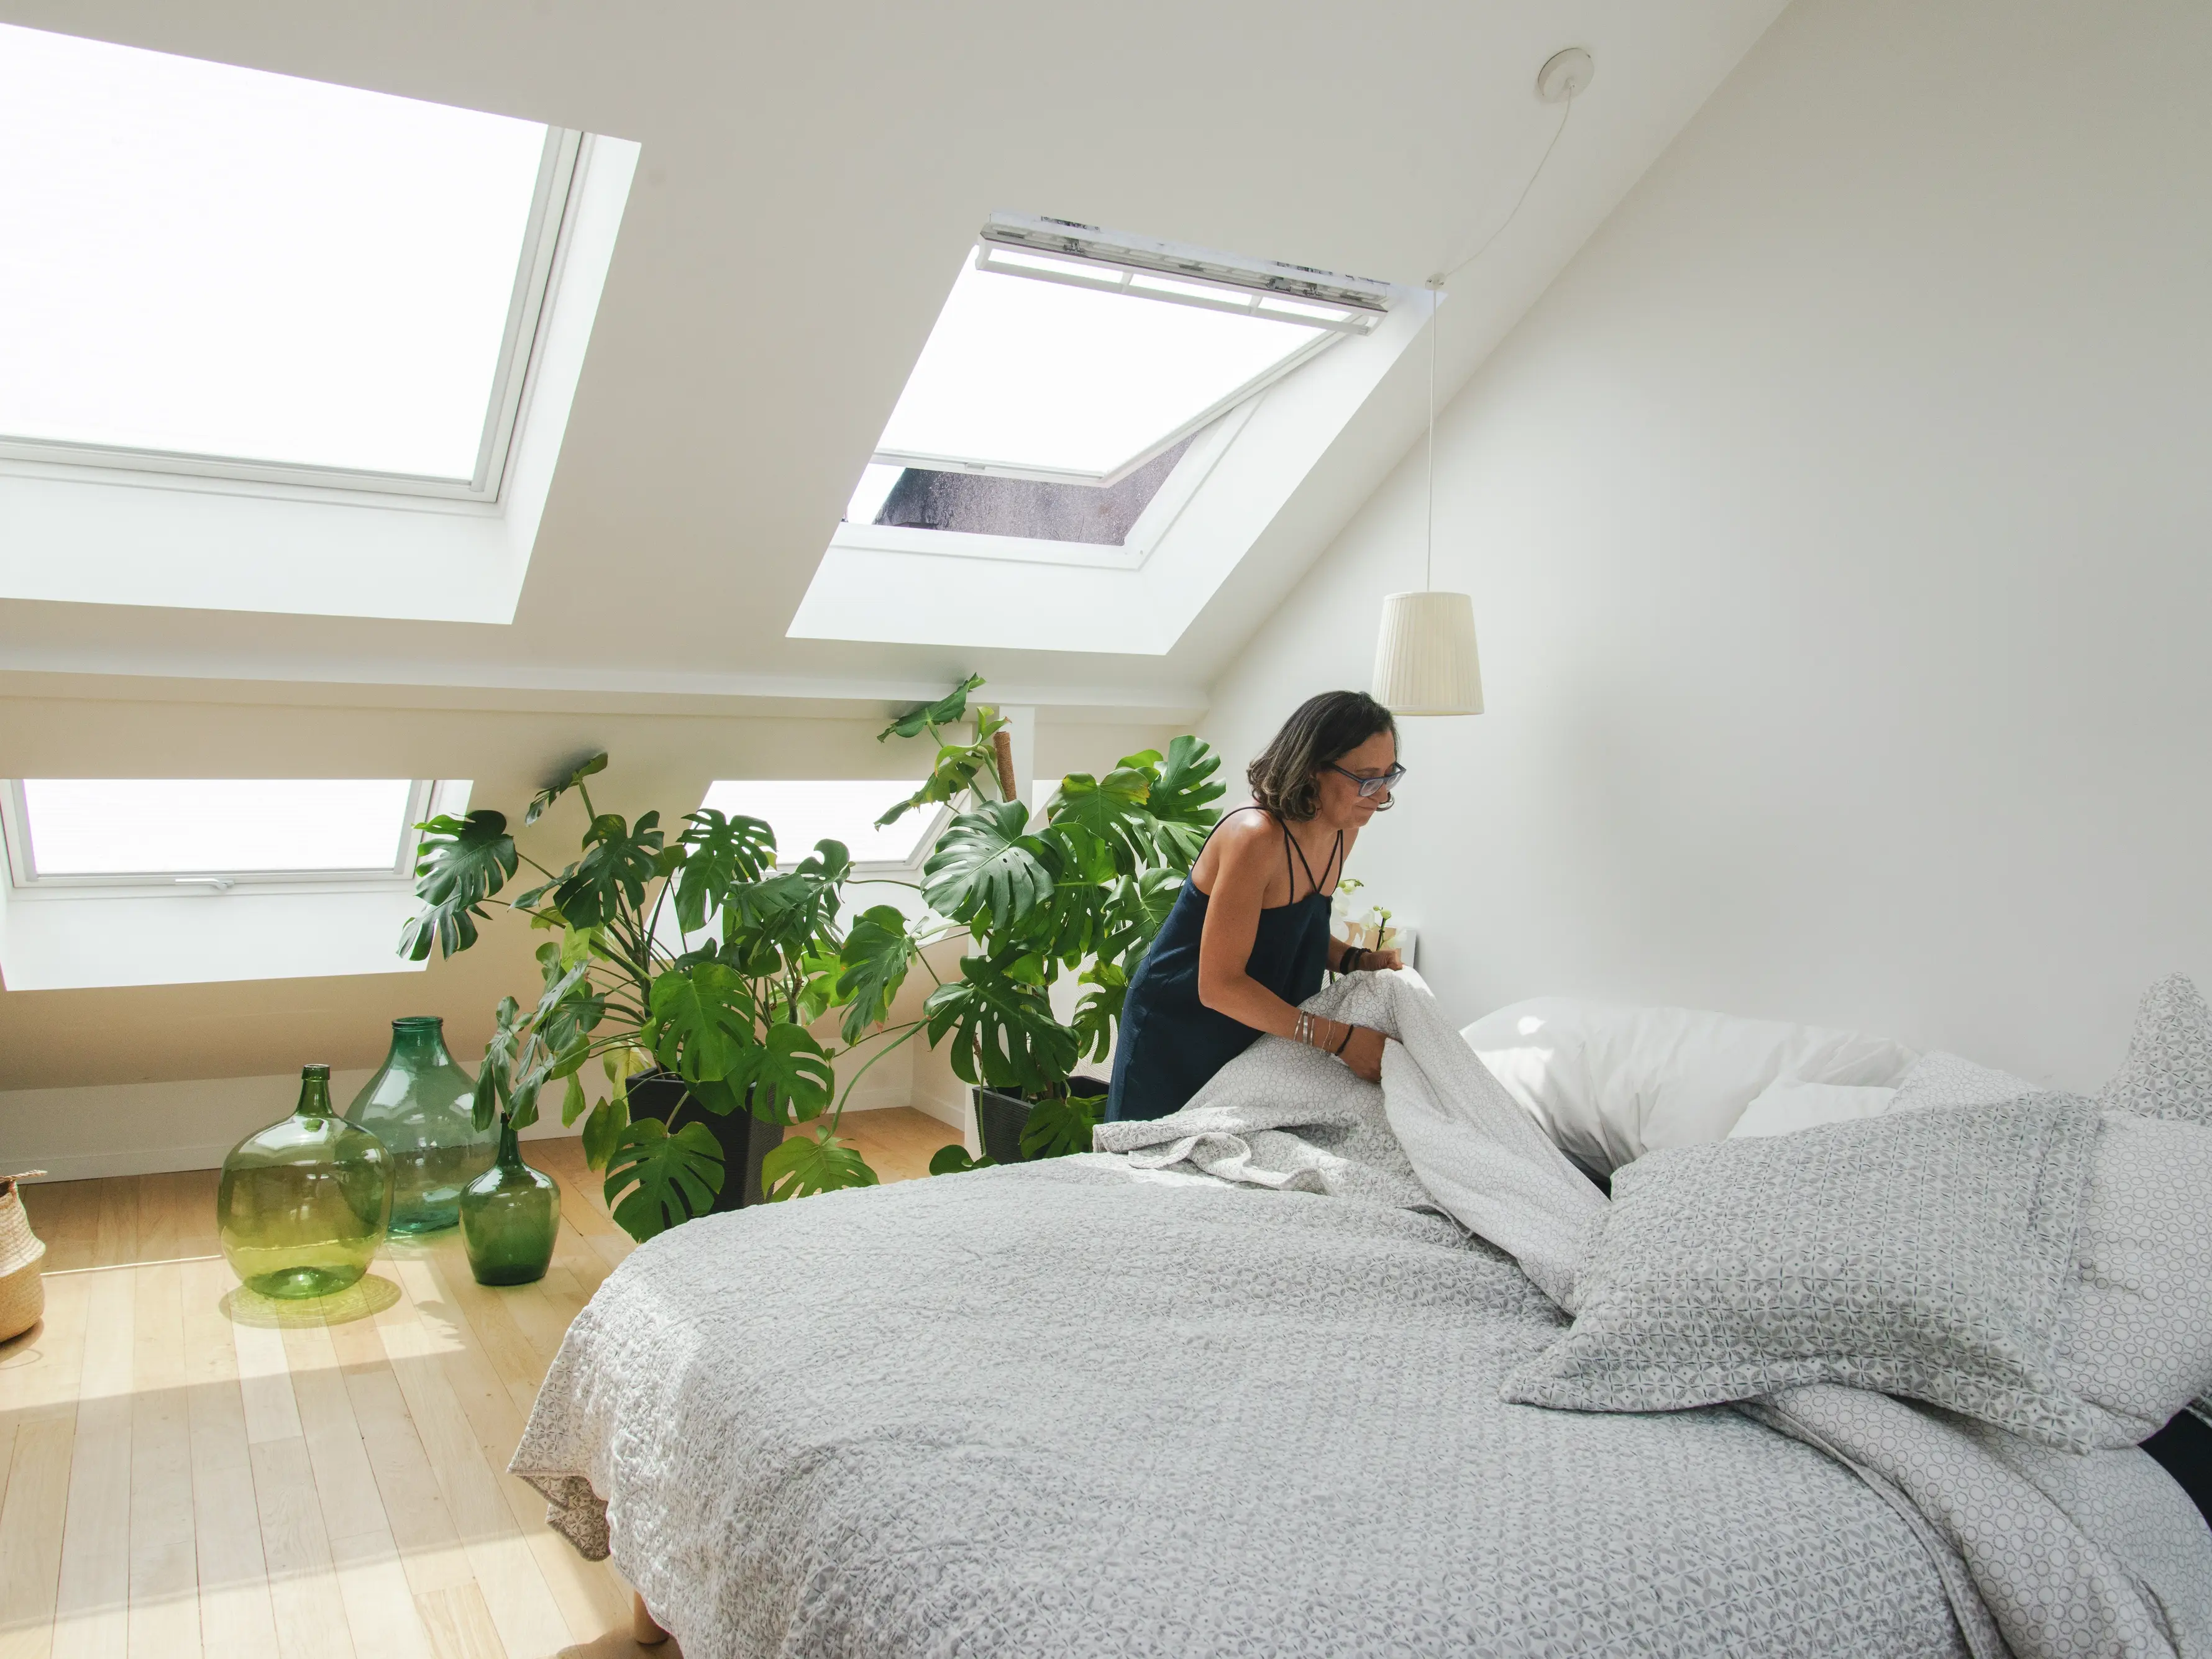 Chambre mansardée confortable avec fenêtres de toit VELUX, plantes et décoration minimaliste.